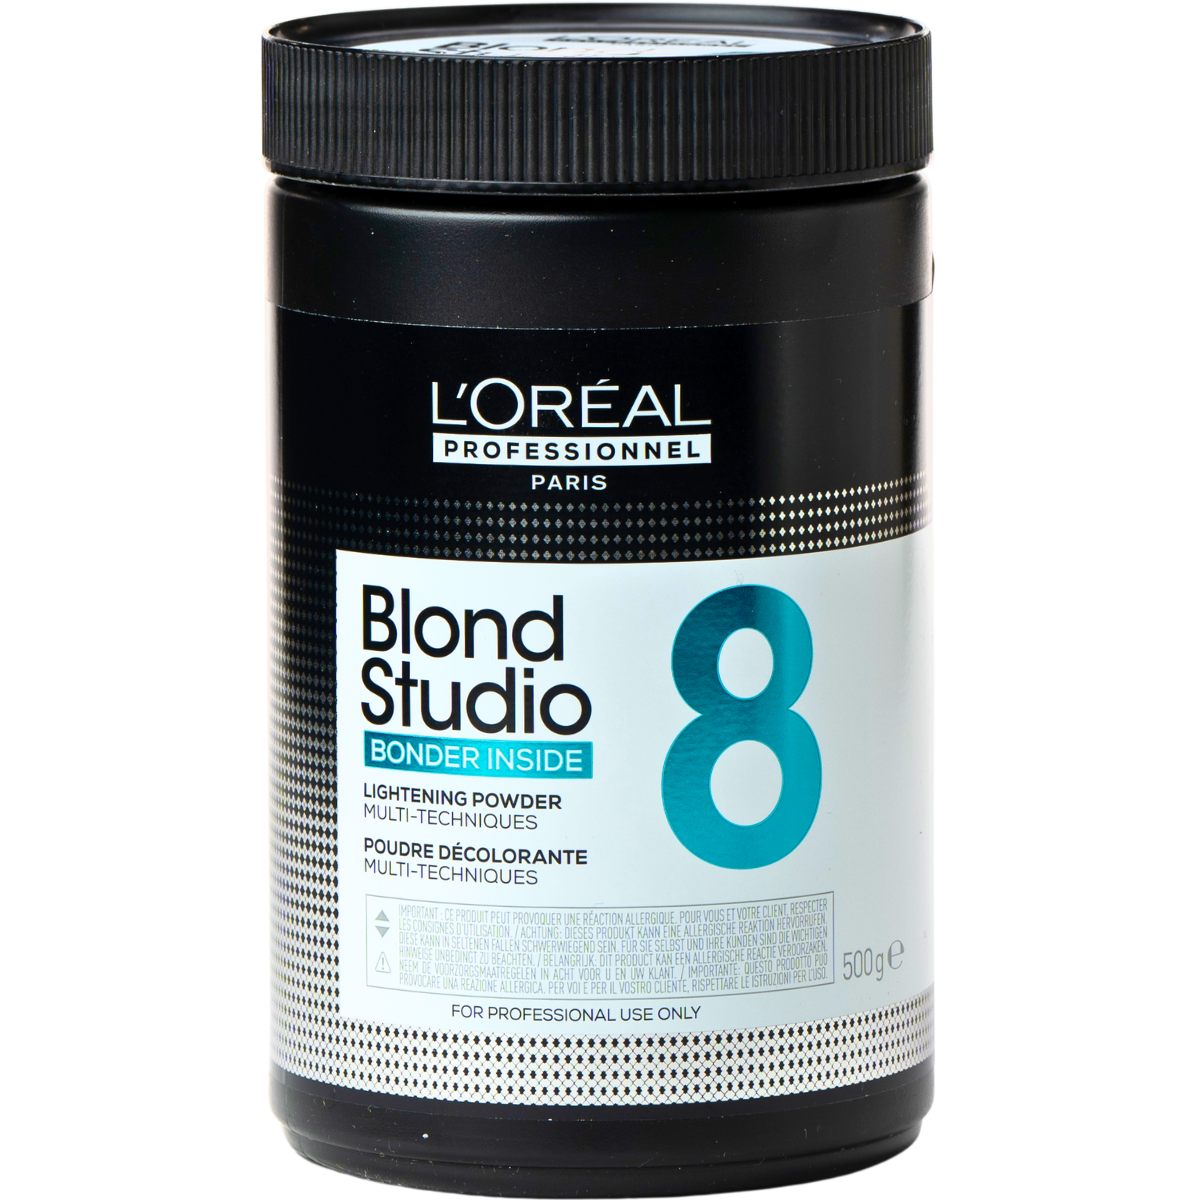 אבקת הבהרה BLOND STUDIO לגוונים פתוחים וגווני בליאז` (עד 8 טונים) לוריאל 500 גר`